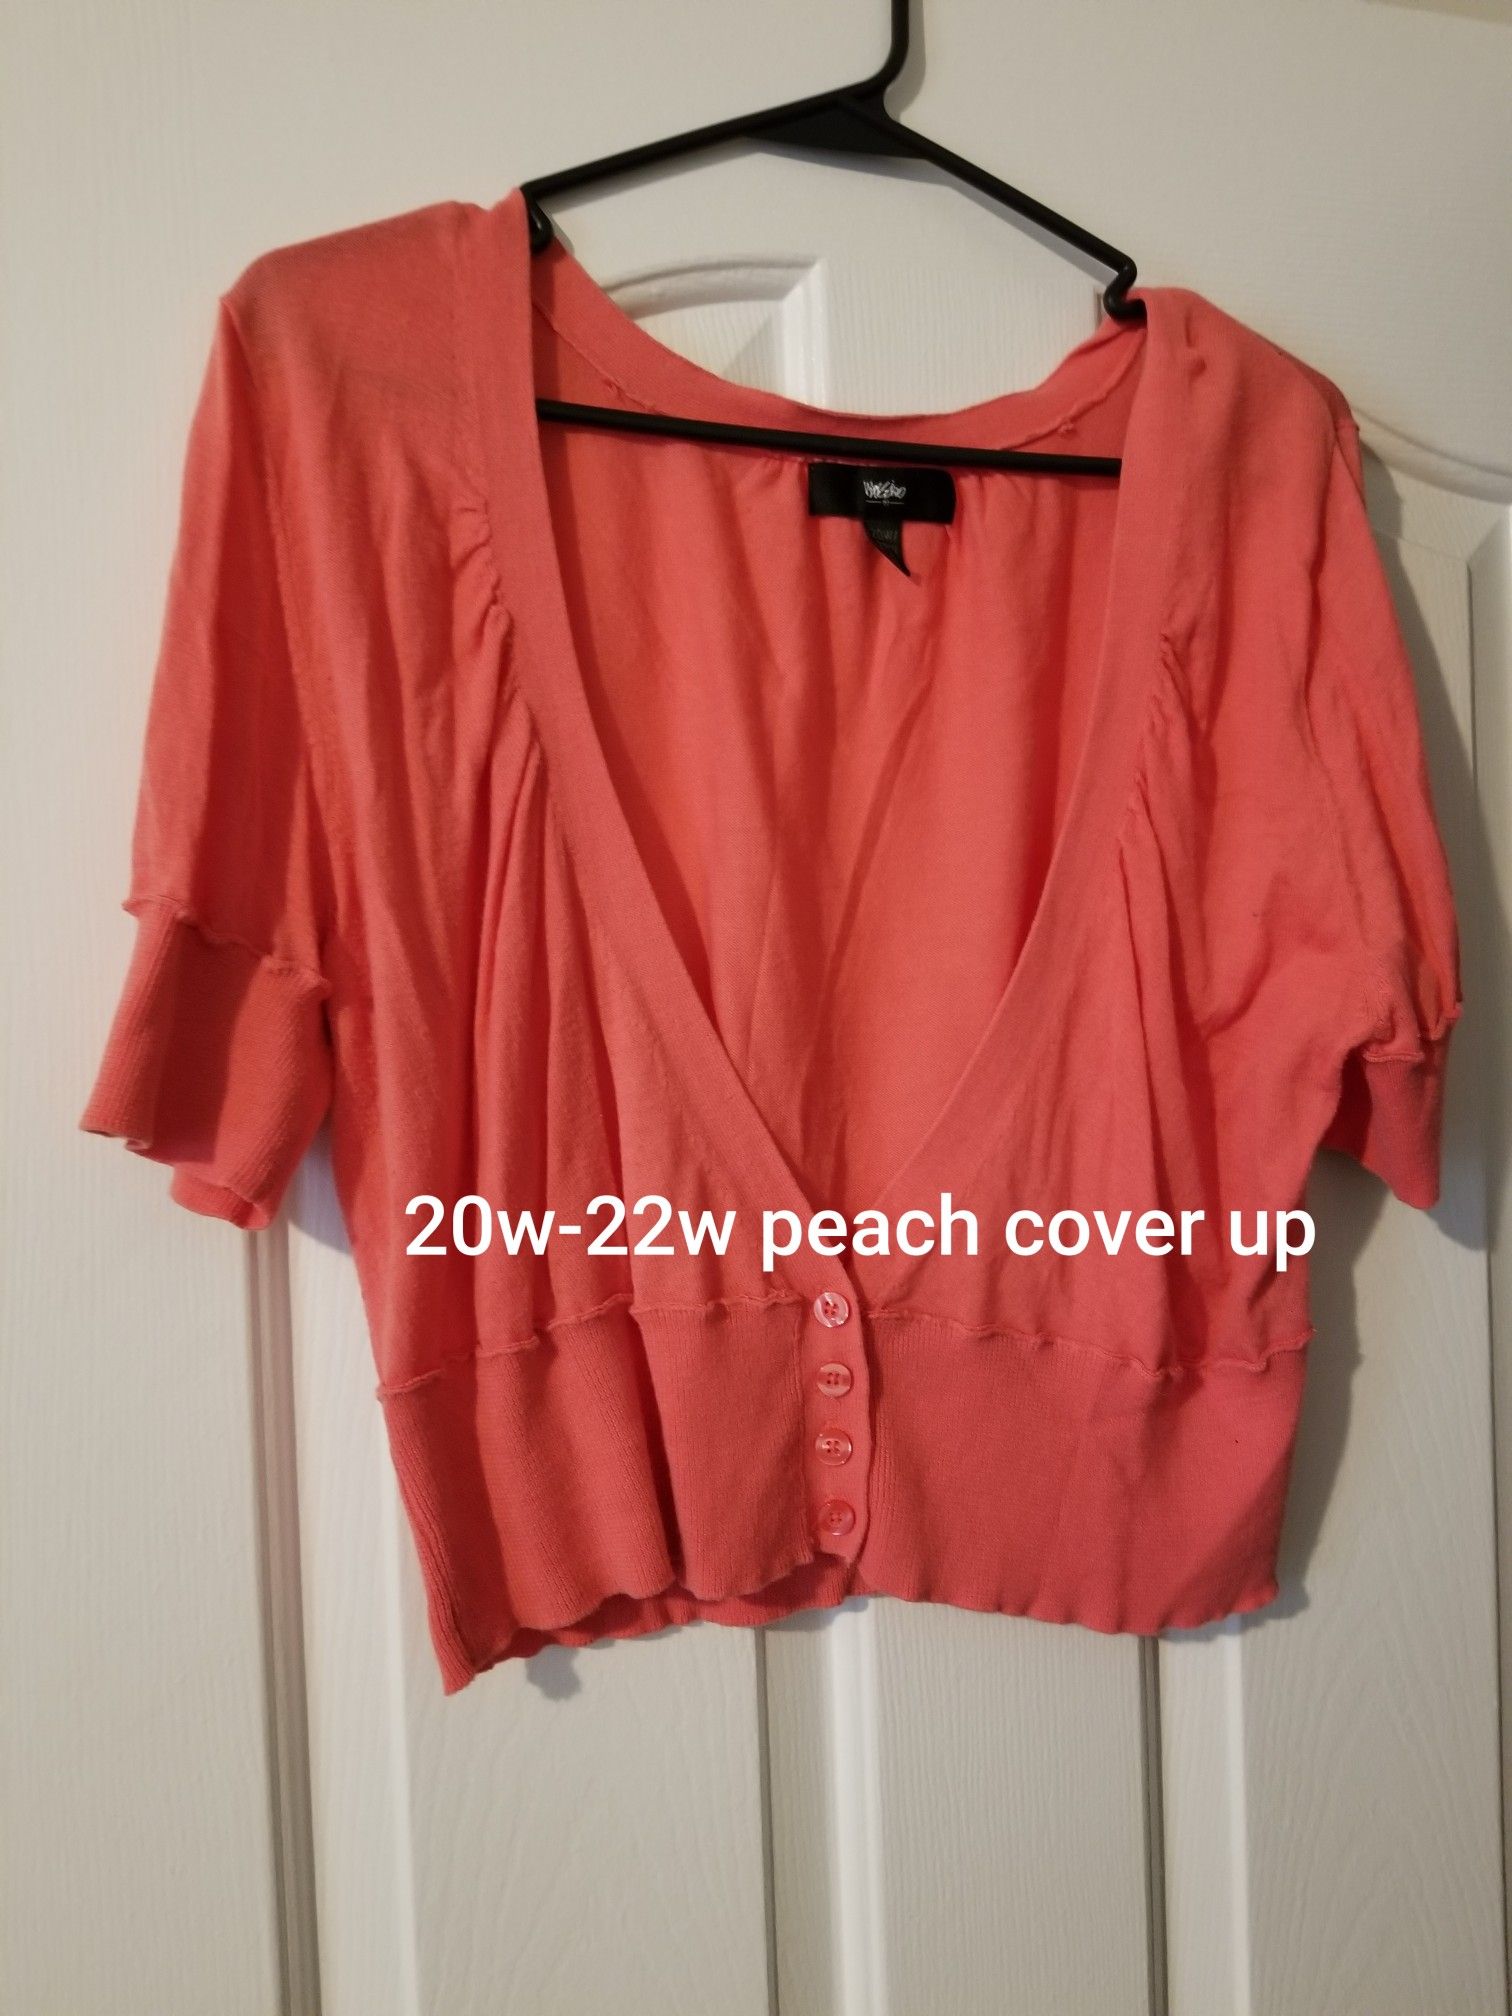 20w-22w peach colored half-body cover up